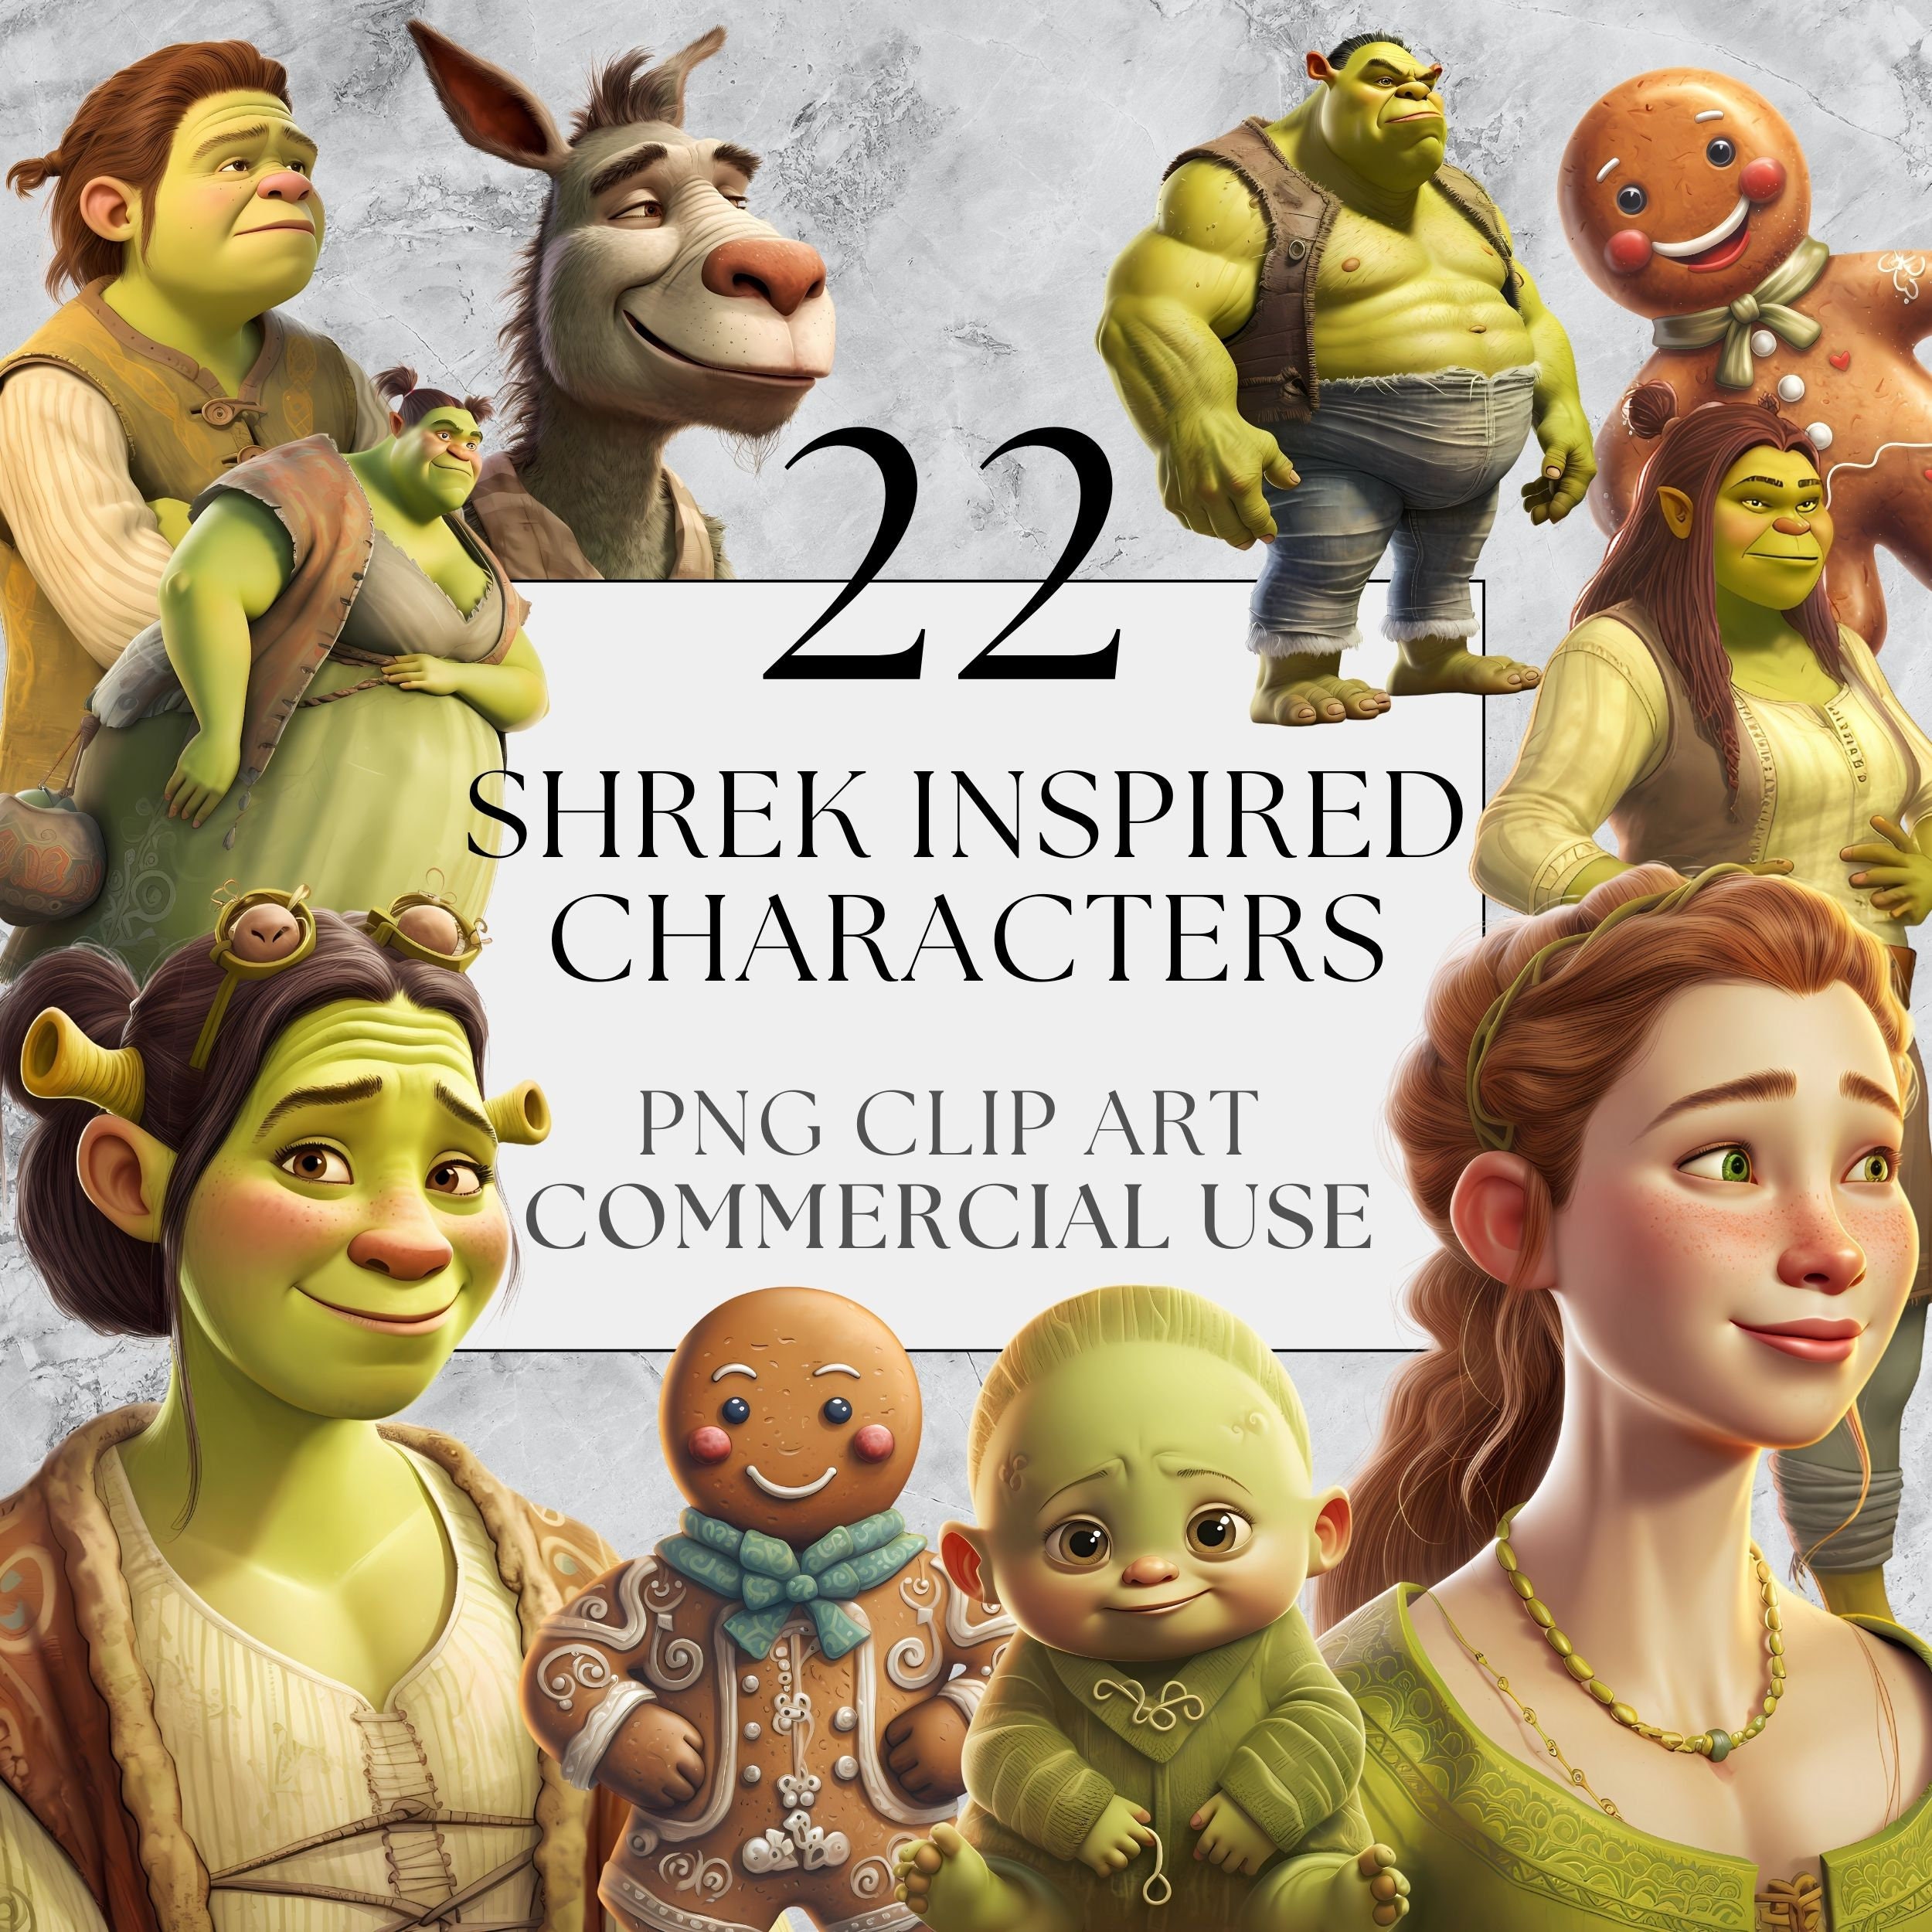 Shrek Flexing meme | Art Print